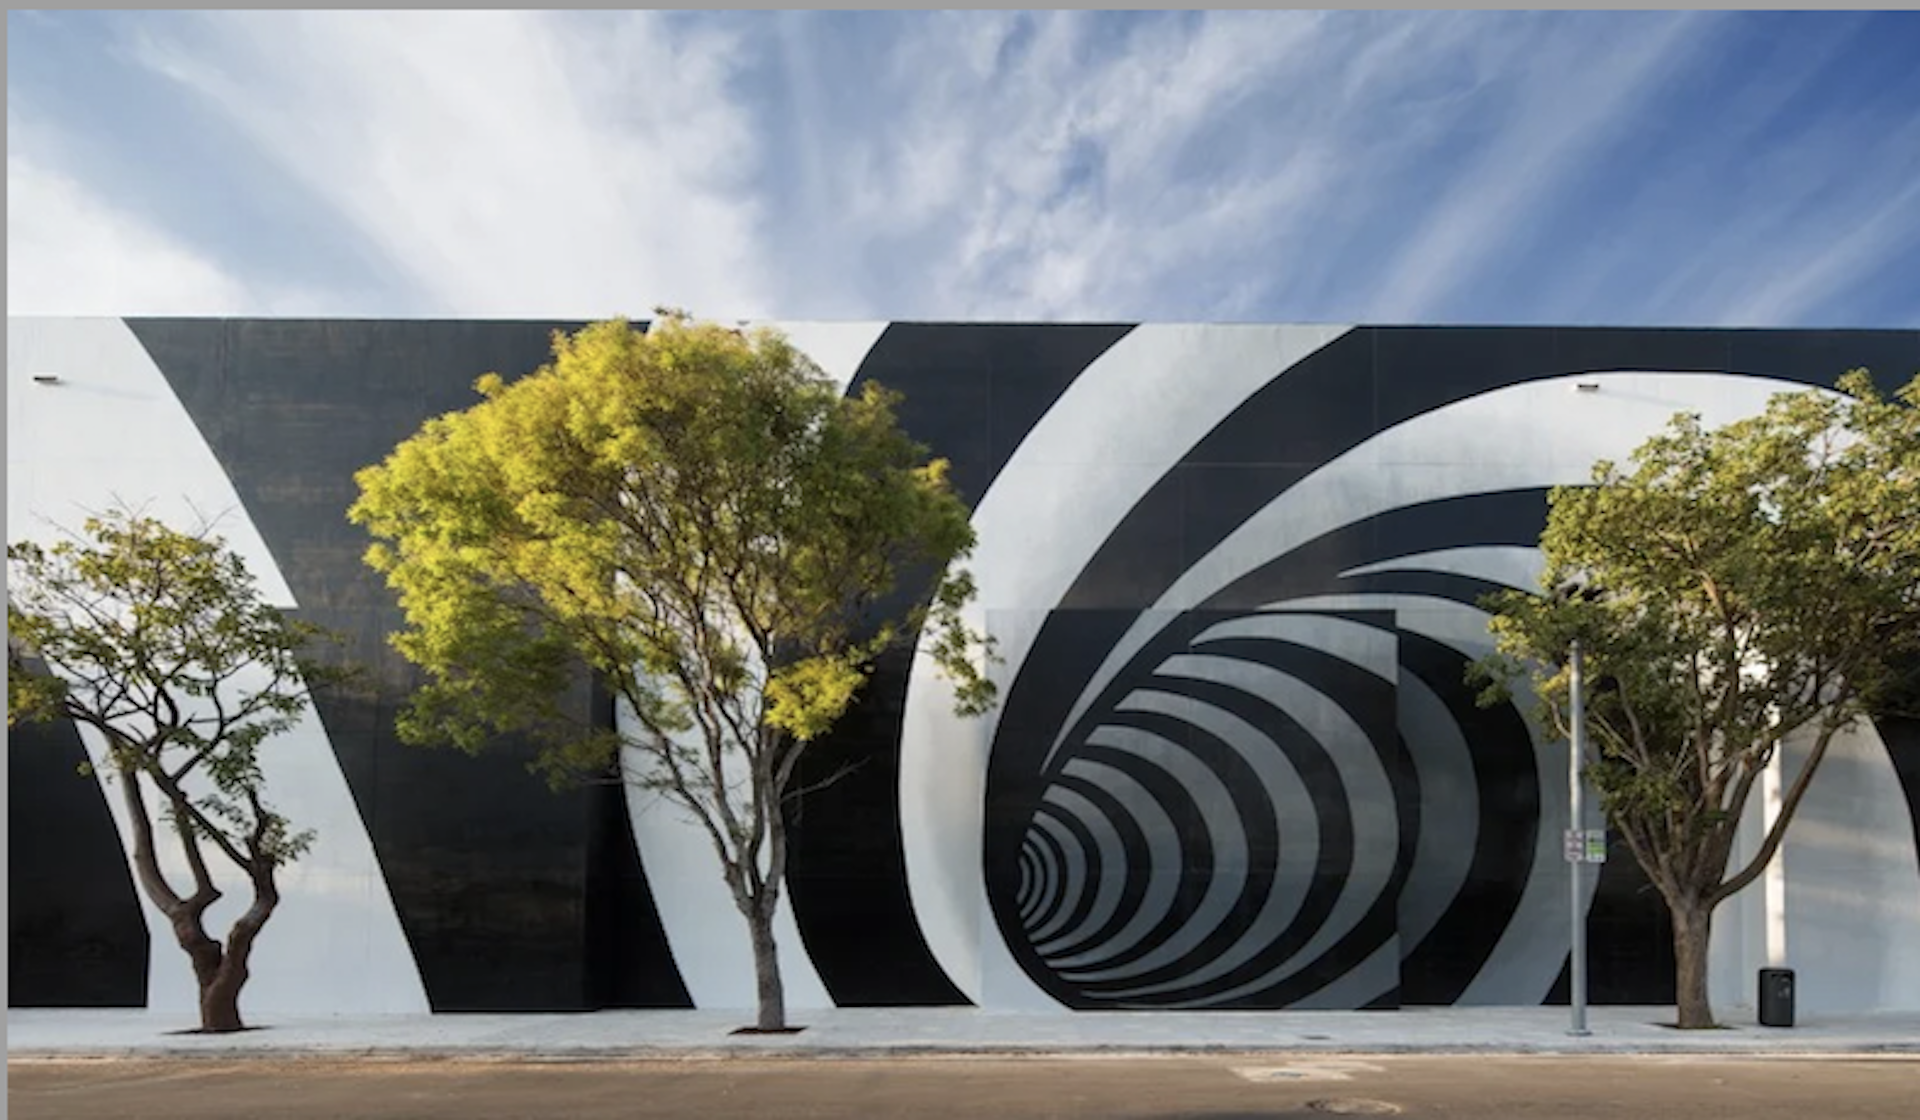 Public Art Tour in the Miami Design District - Luxury Guide USA